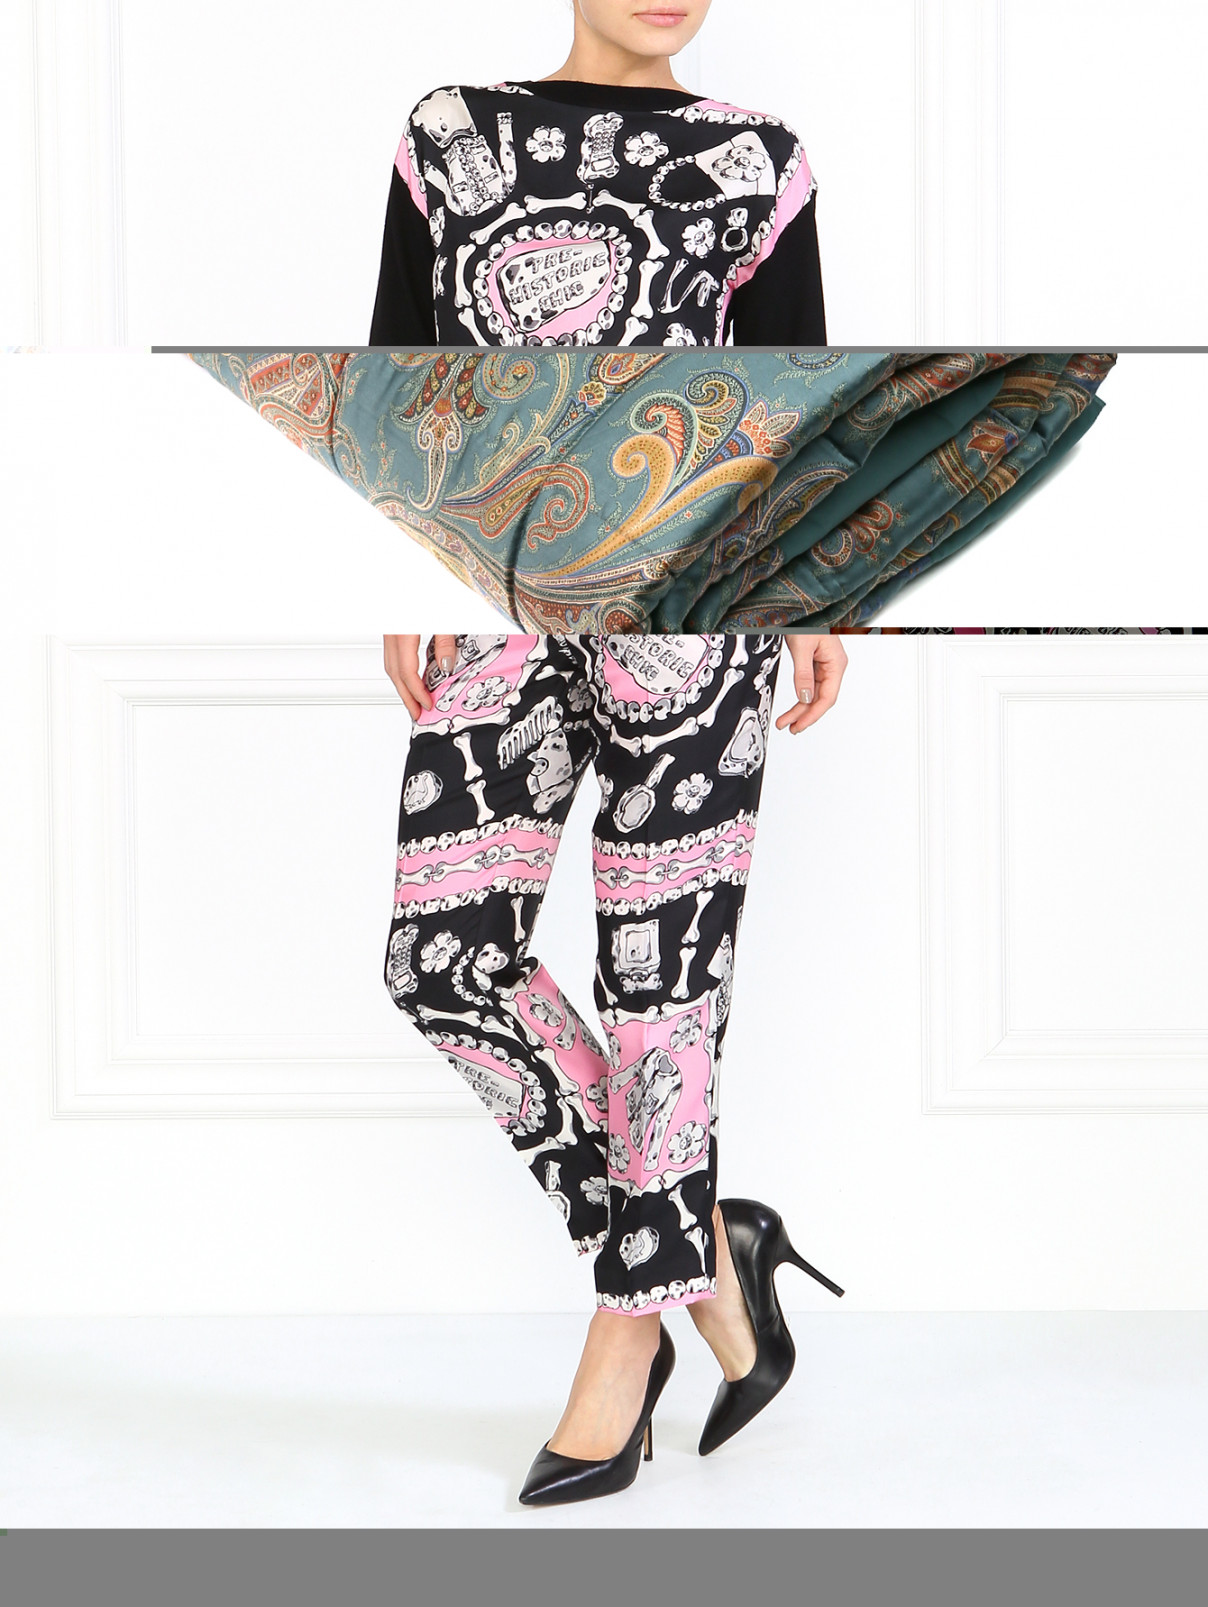 Шелковые брюки с принтом Moschino Cheap&Chic  –  Модель Общий вид  – Цвет:  Узор